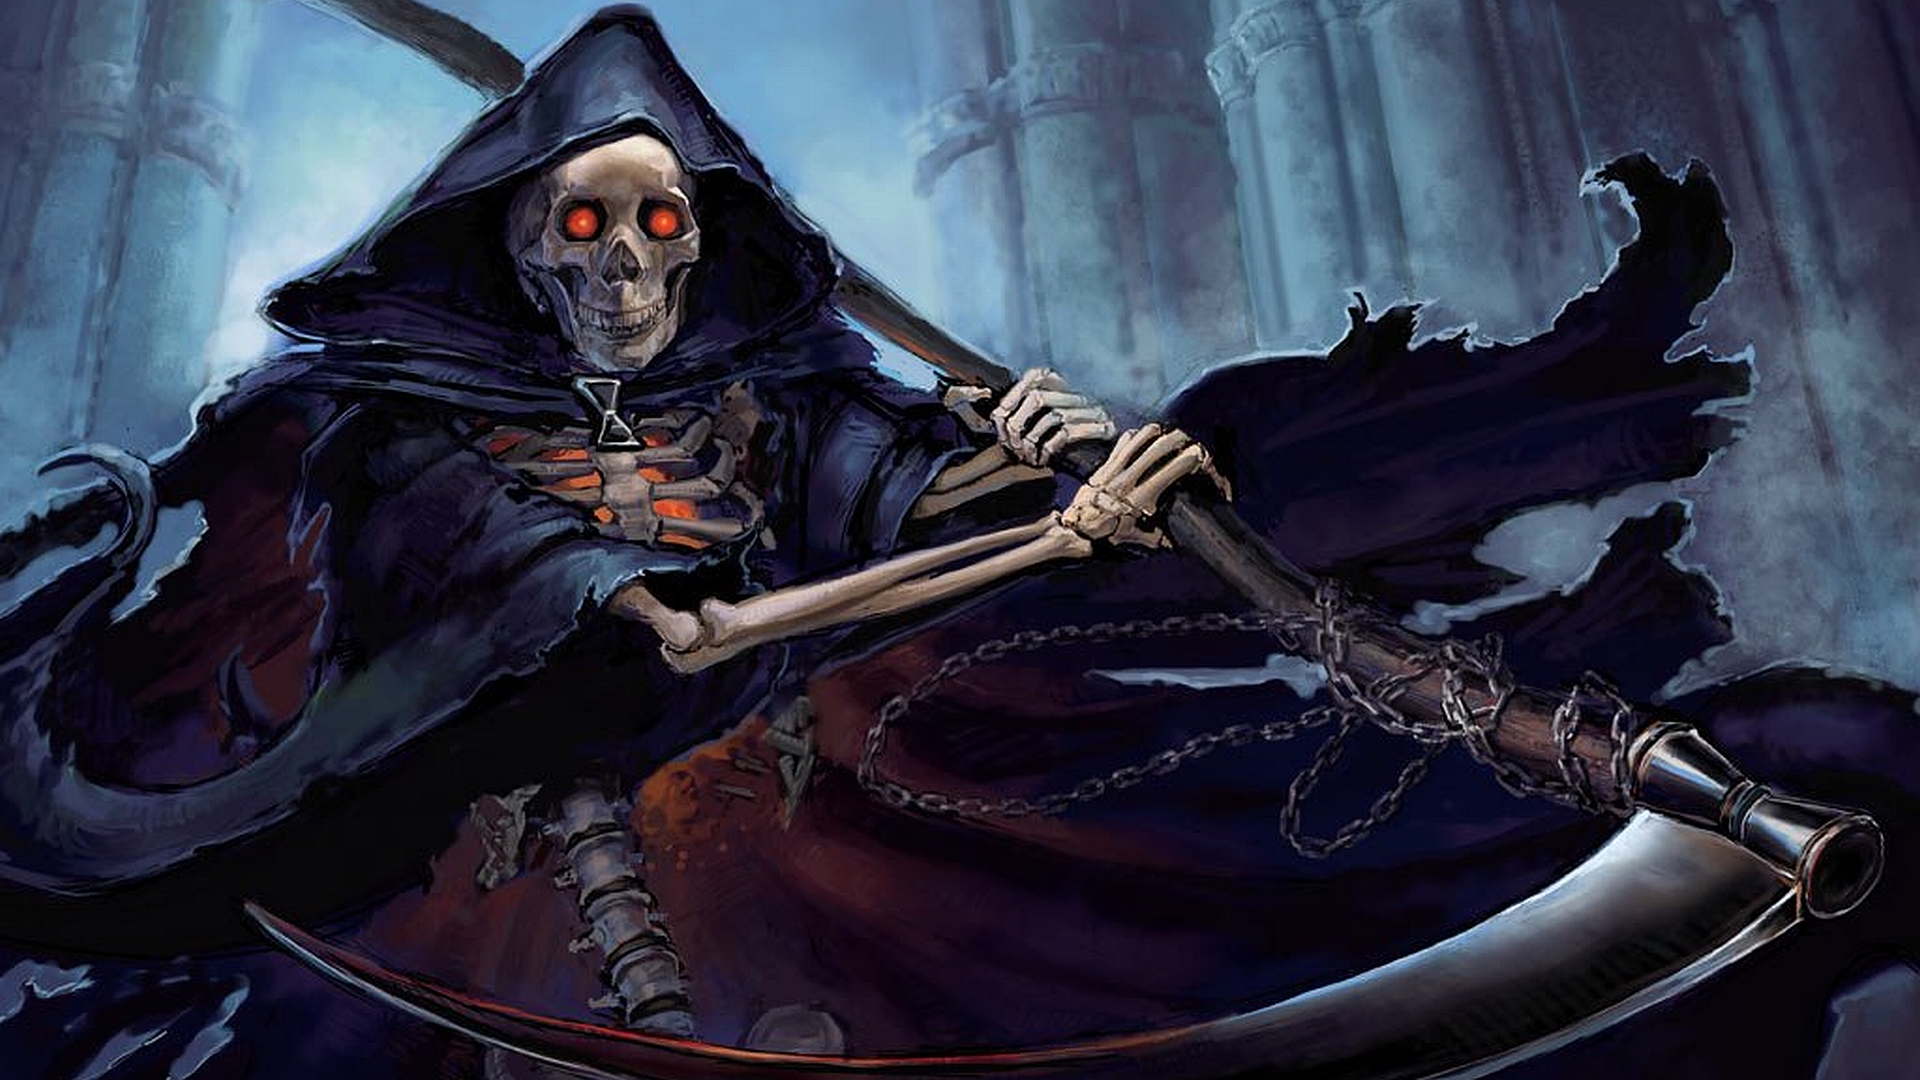 Free download wallpaper Grim Reaper, Dark on your PC desktop